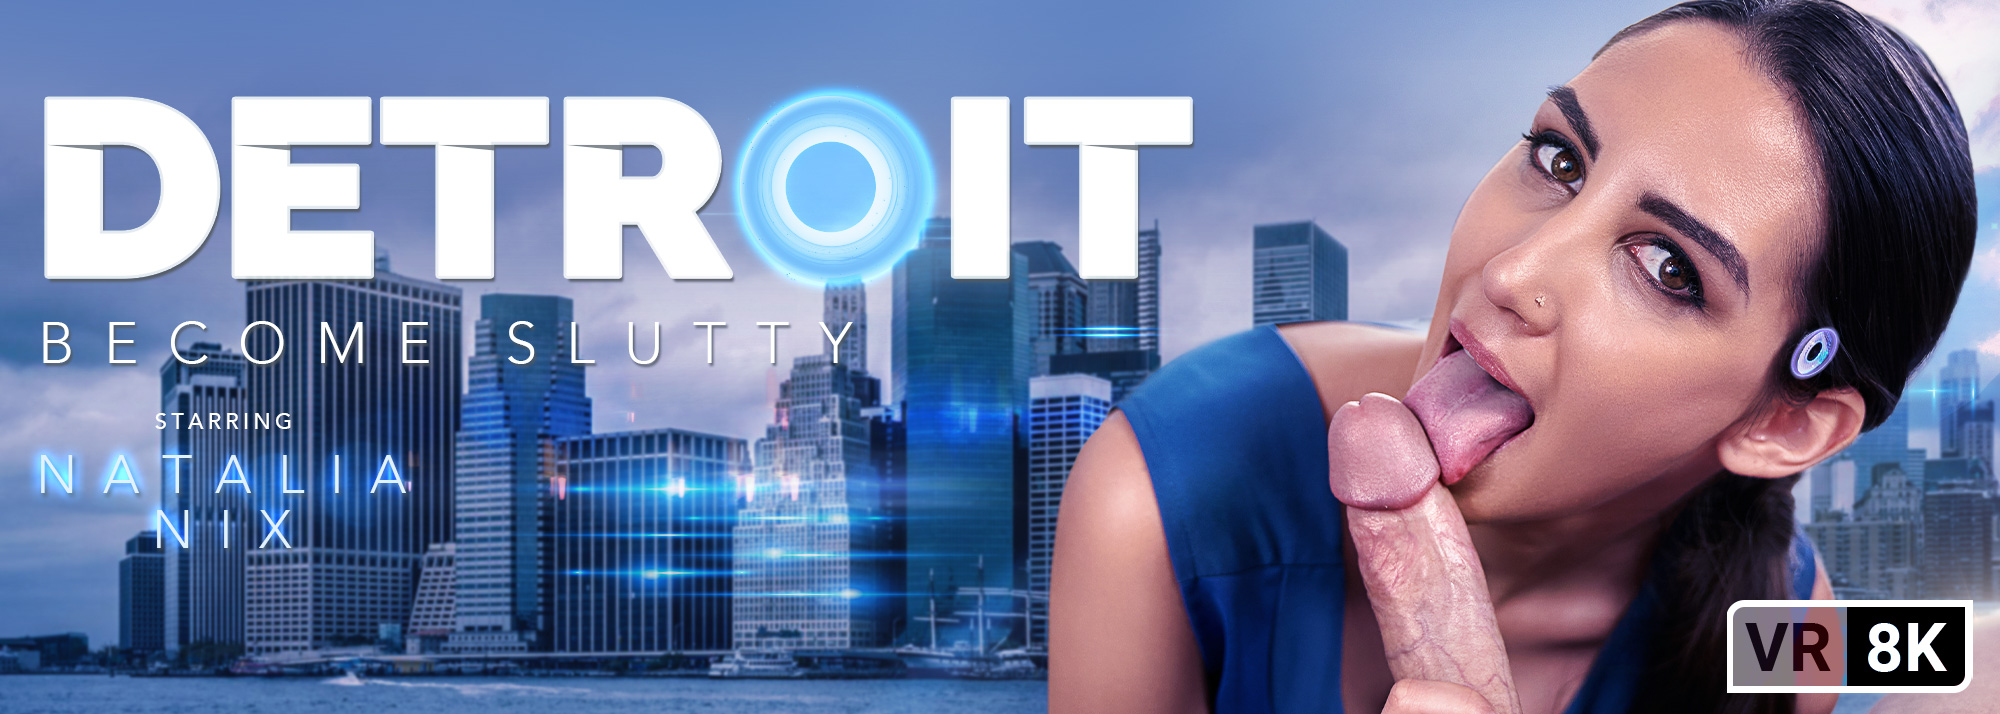 Detroit: Become Slutty - VR Porn Video, Starring Natalia Nix VR